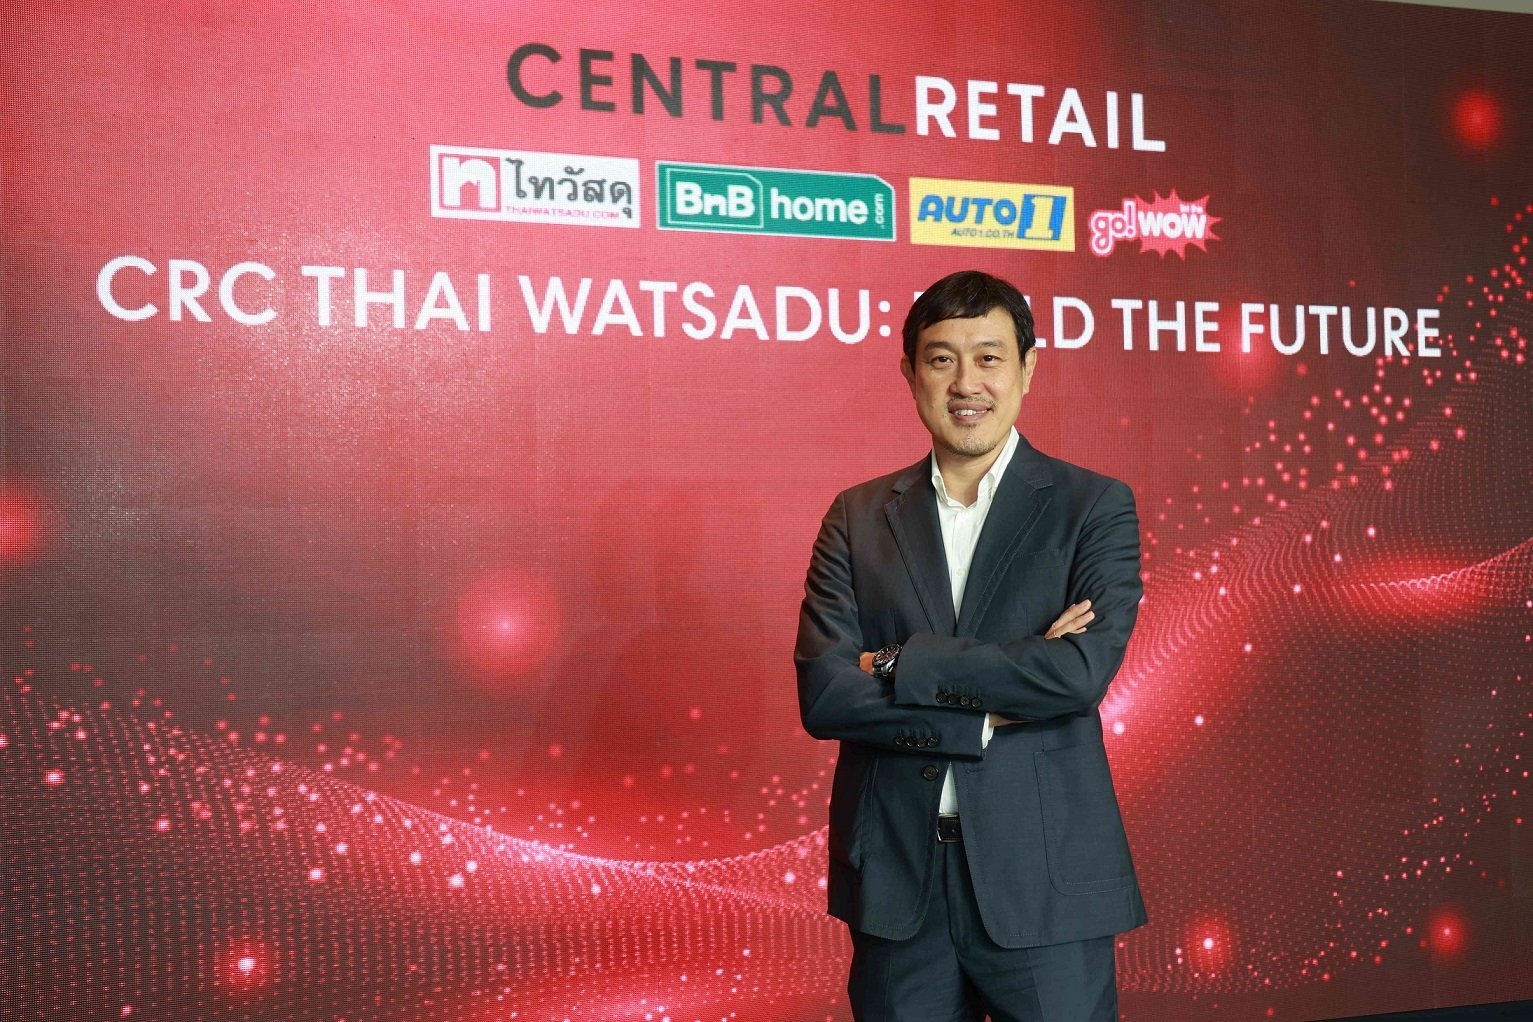 เซ็นทรัล รีเทล ปลื้ม ดัน ซีอาร์ซี ไทวัสดุ เตรียมขึ้นแท่นเบอร์ 1 วงการค้าปลีกวัสดุก่อสร้าง อัดฉีดงบ 7,000 ลบ. ชู 5 กลยุทธ์ ปี’65 CRC Thai Watsadu : Build the future สร้างอนาคตมิติใหม่ขับเคลื่อนเศรษฐกิจไทยอย่างยั่งยืน